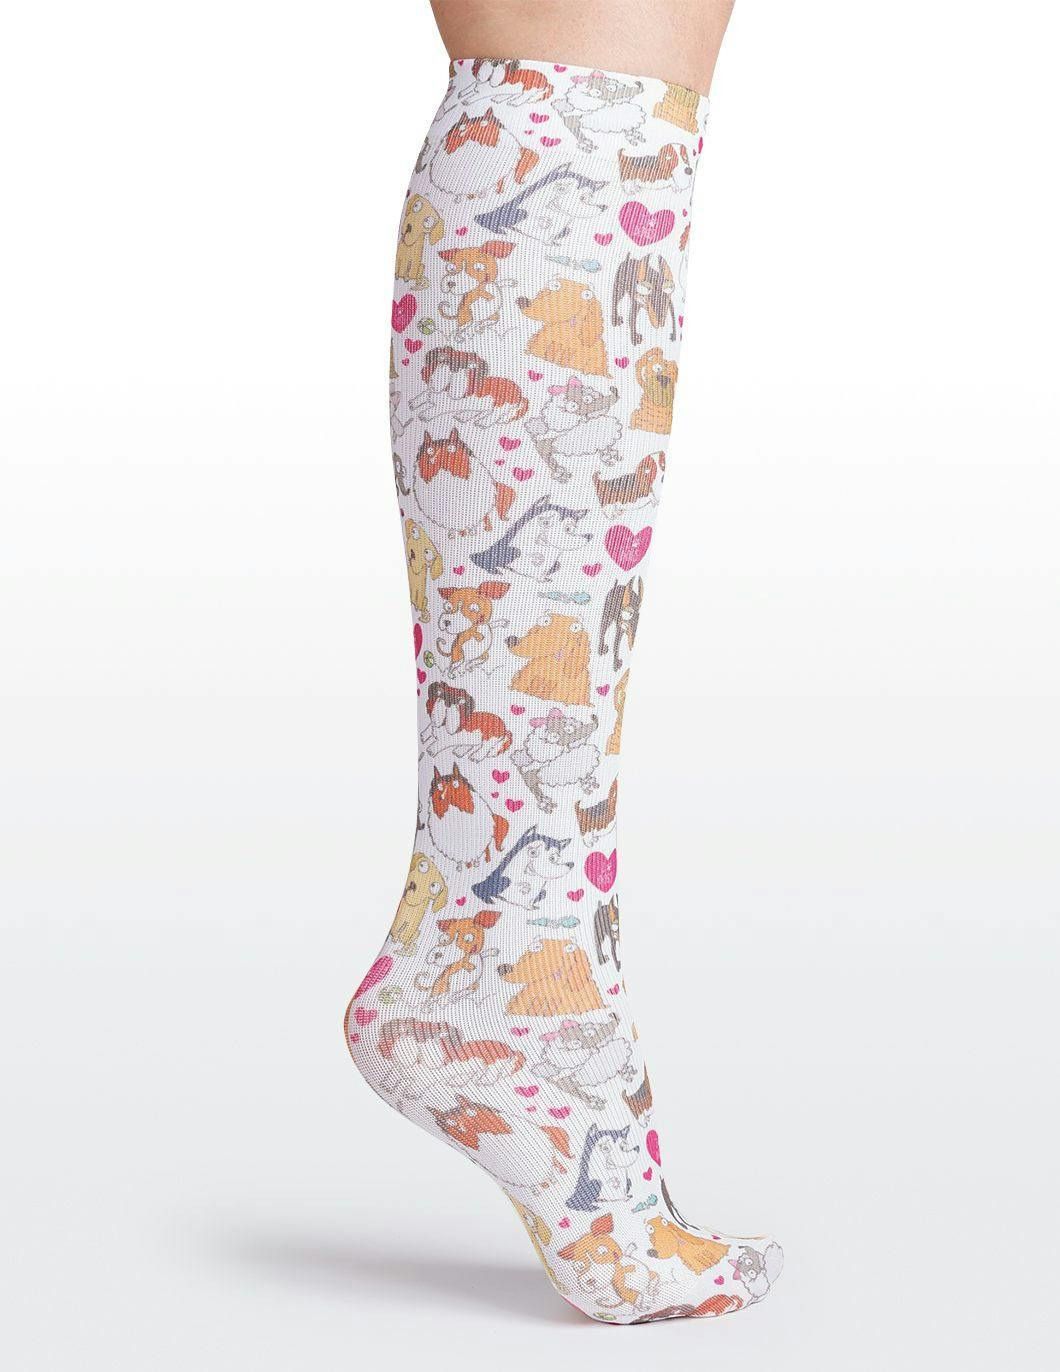 cutieful-compression-socks-10-18-mmhg-dog-pawty-print-alt